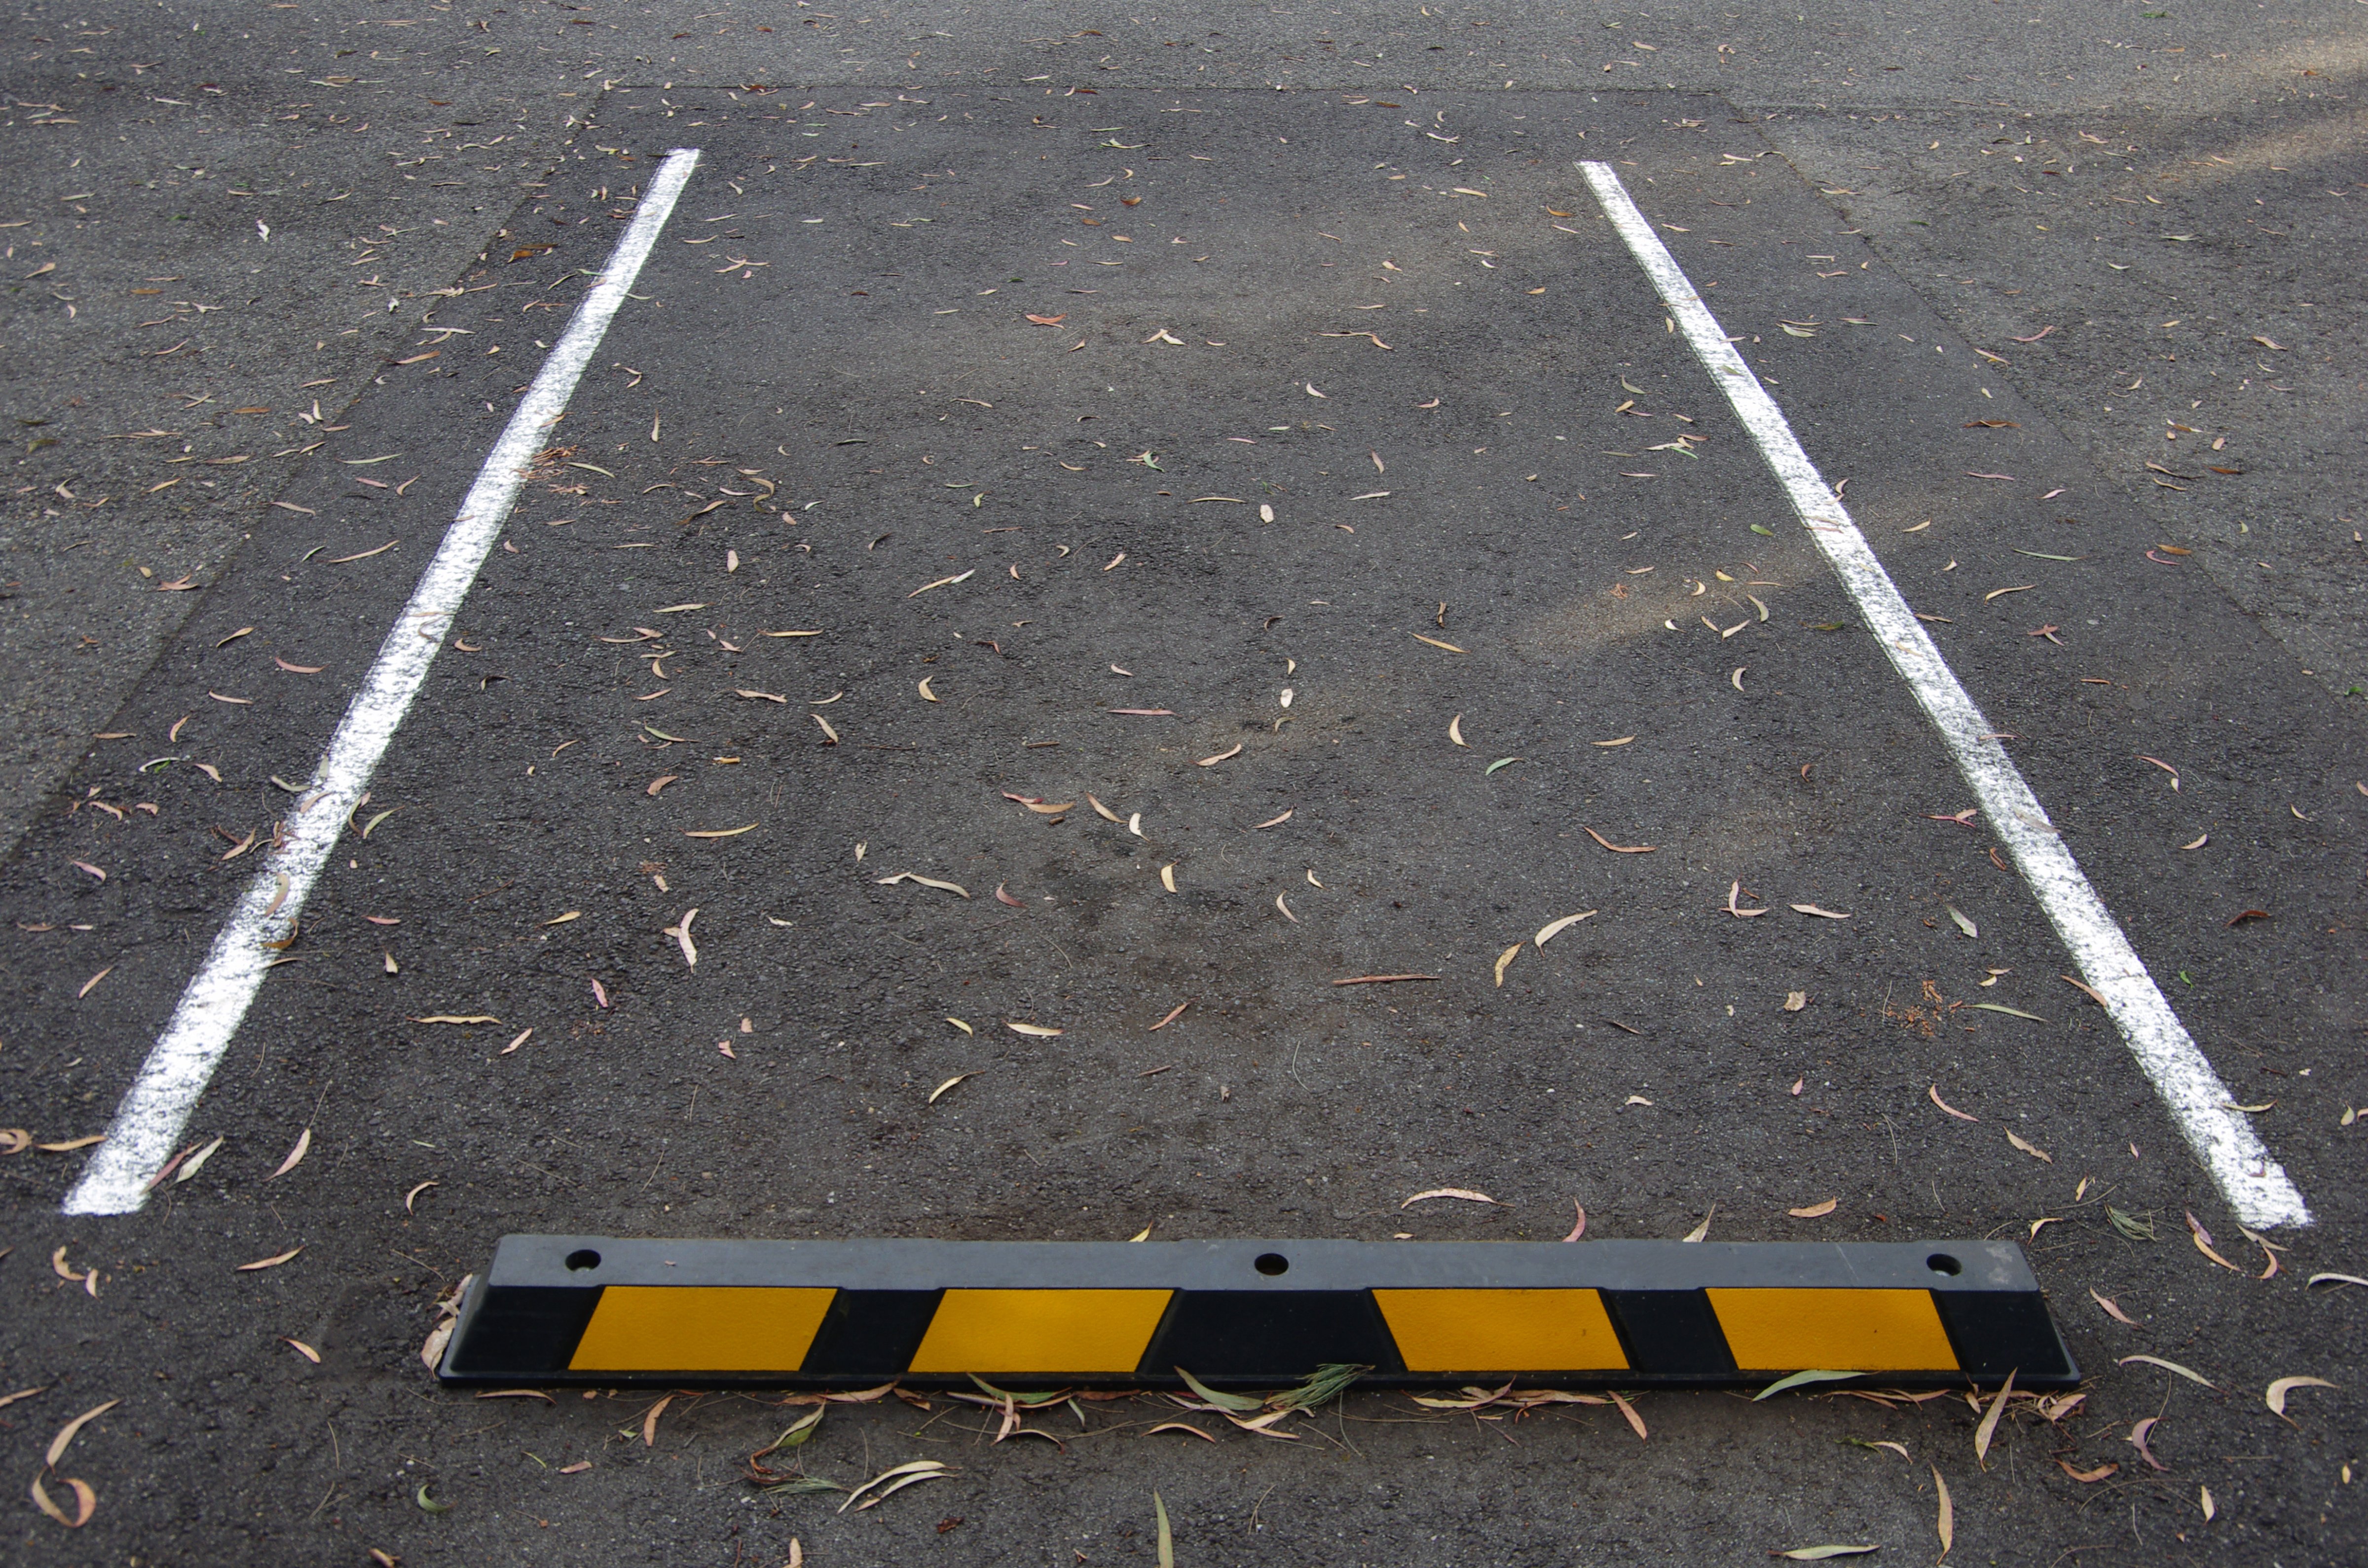 Empty parking spot in an outdoor car park